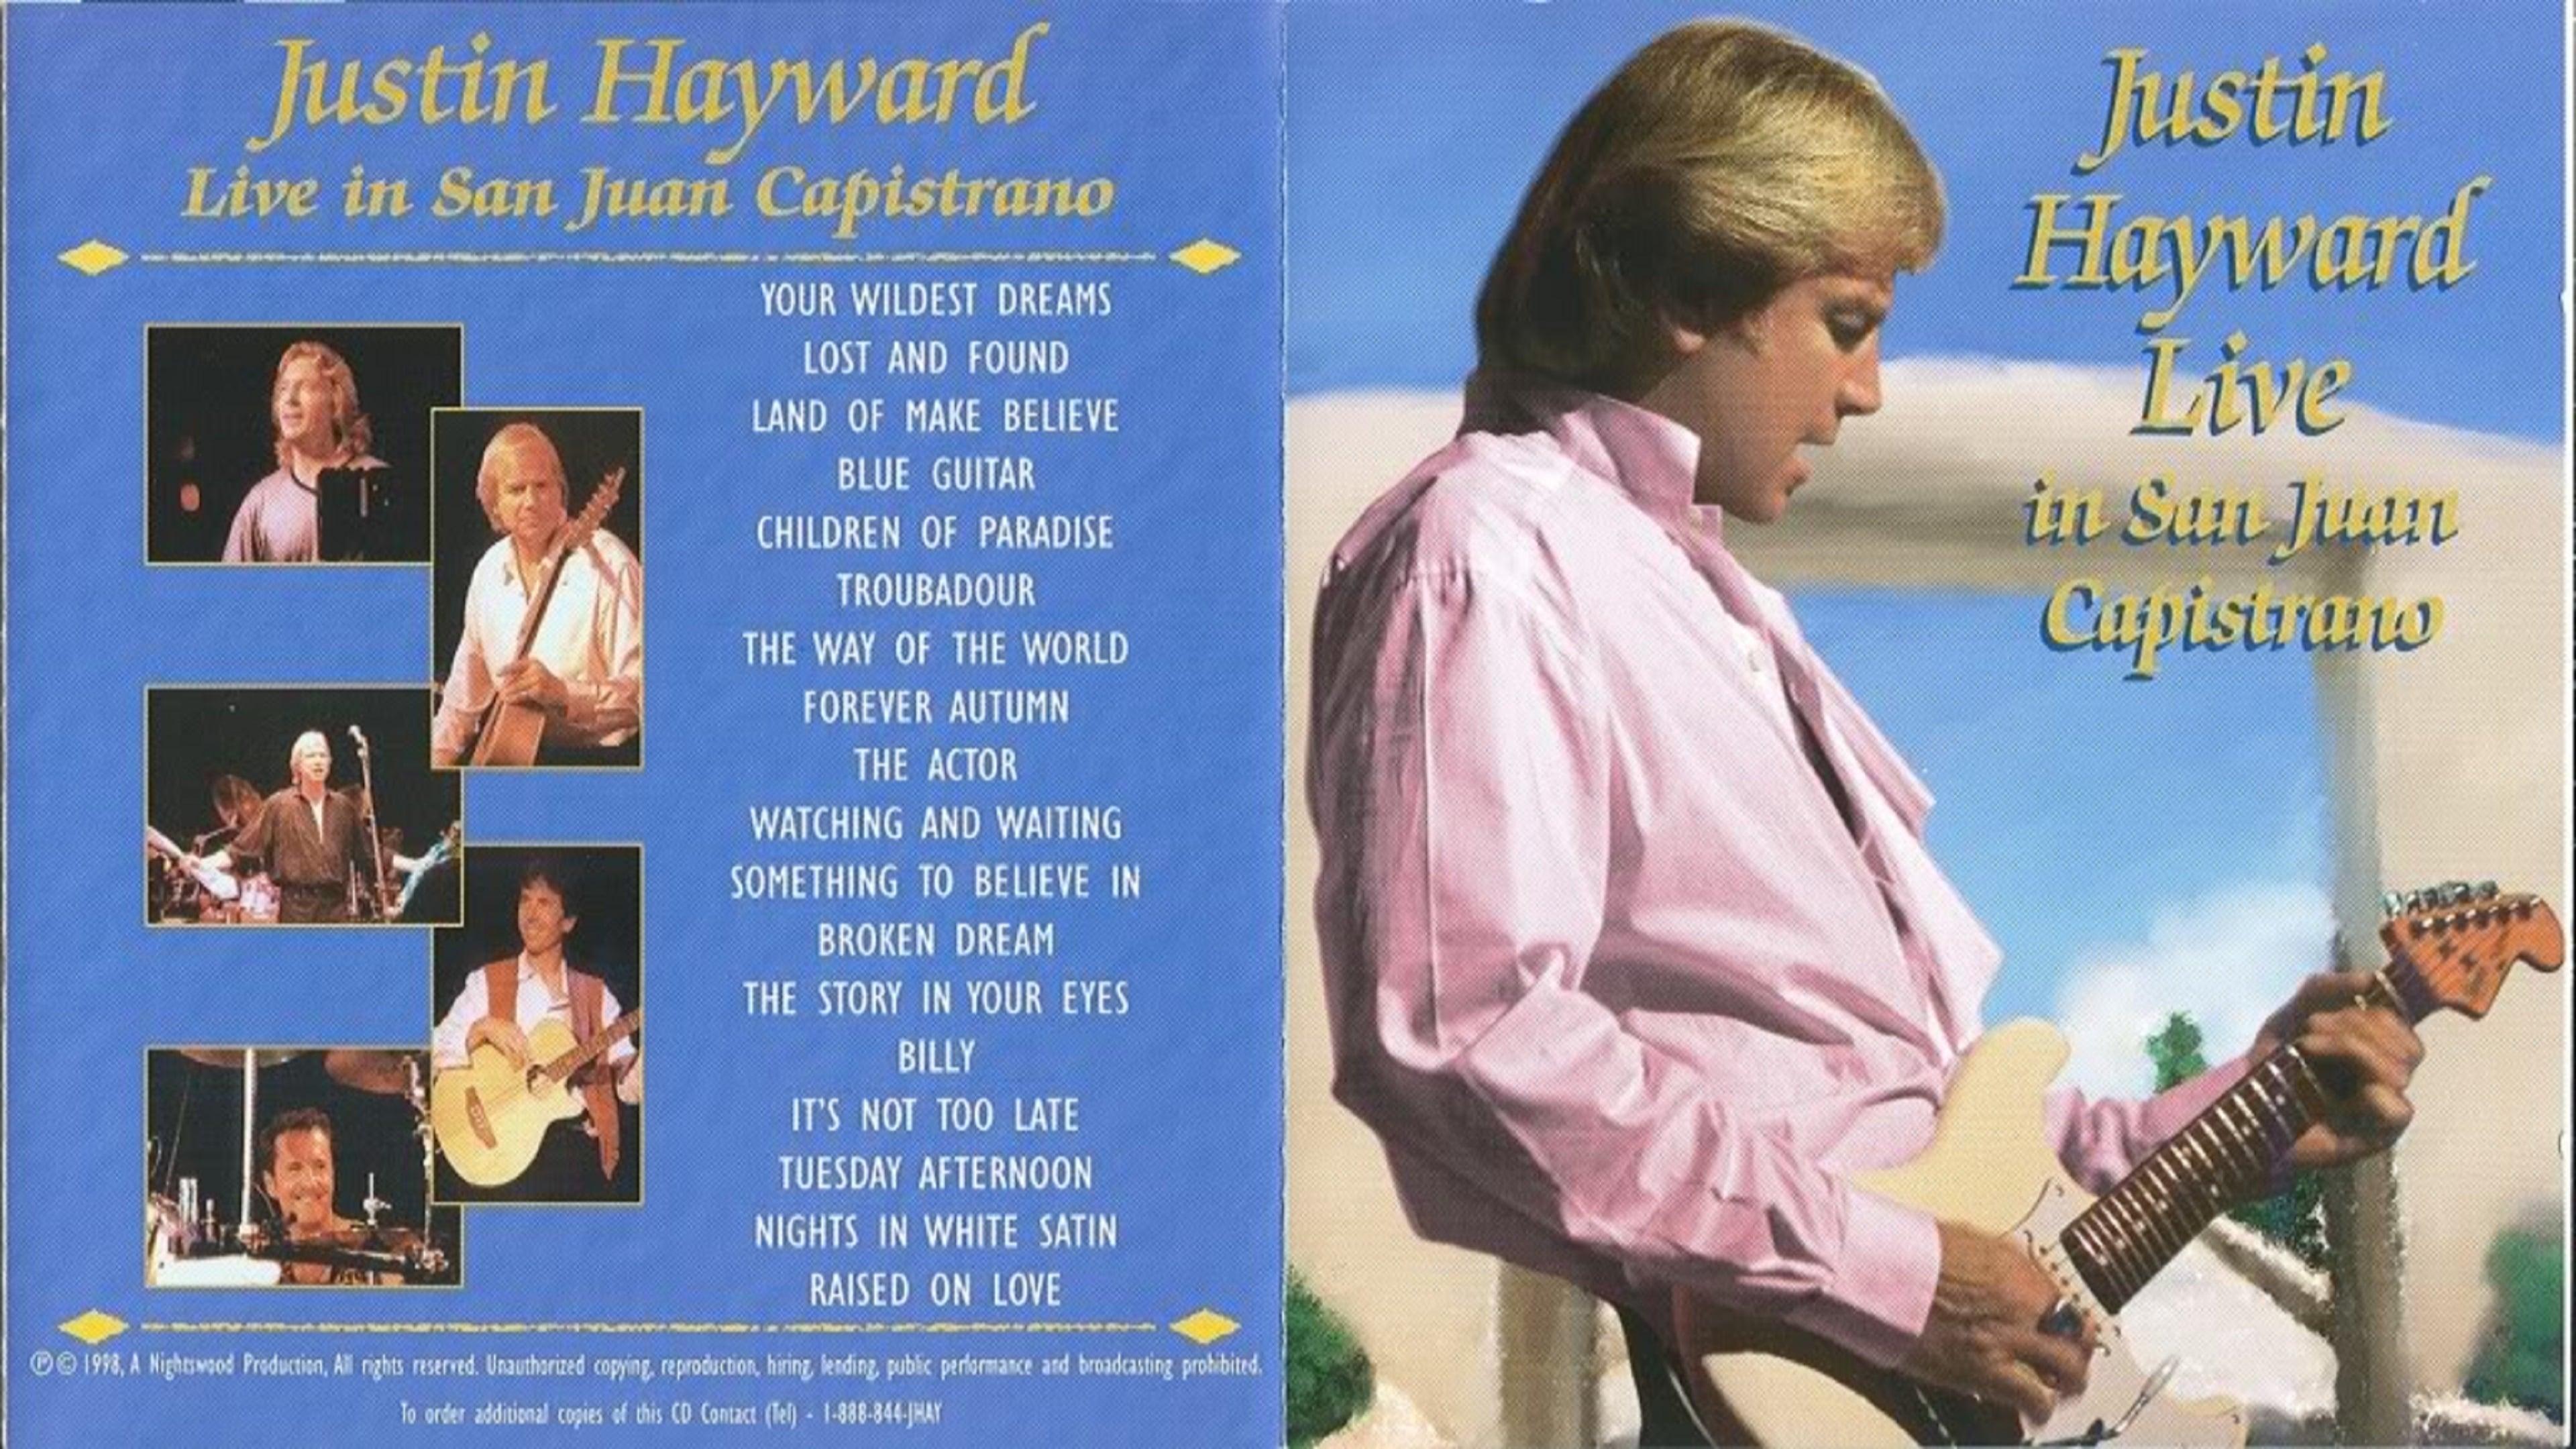 Justin Hayward Live in San Juan Capistrano - 1998 backdrop